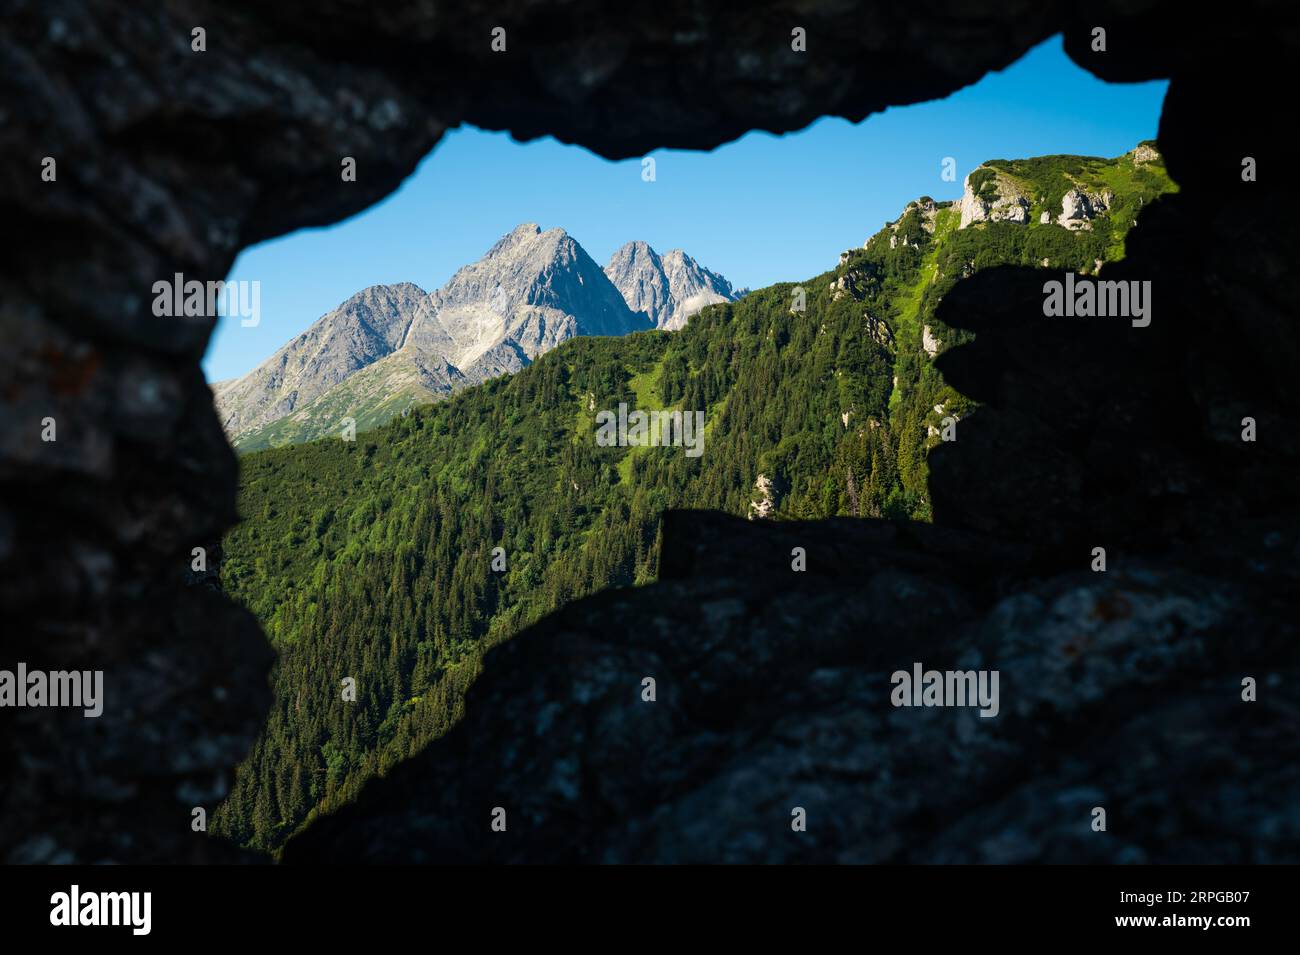 Le tapis émeraude des bois de conifères s'étend à perte de vue, une scène tranquille sous la grandeur imposante des Hautes Tatras Banque D'Images